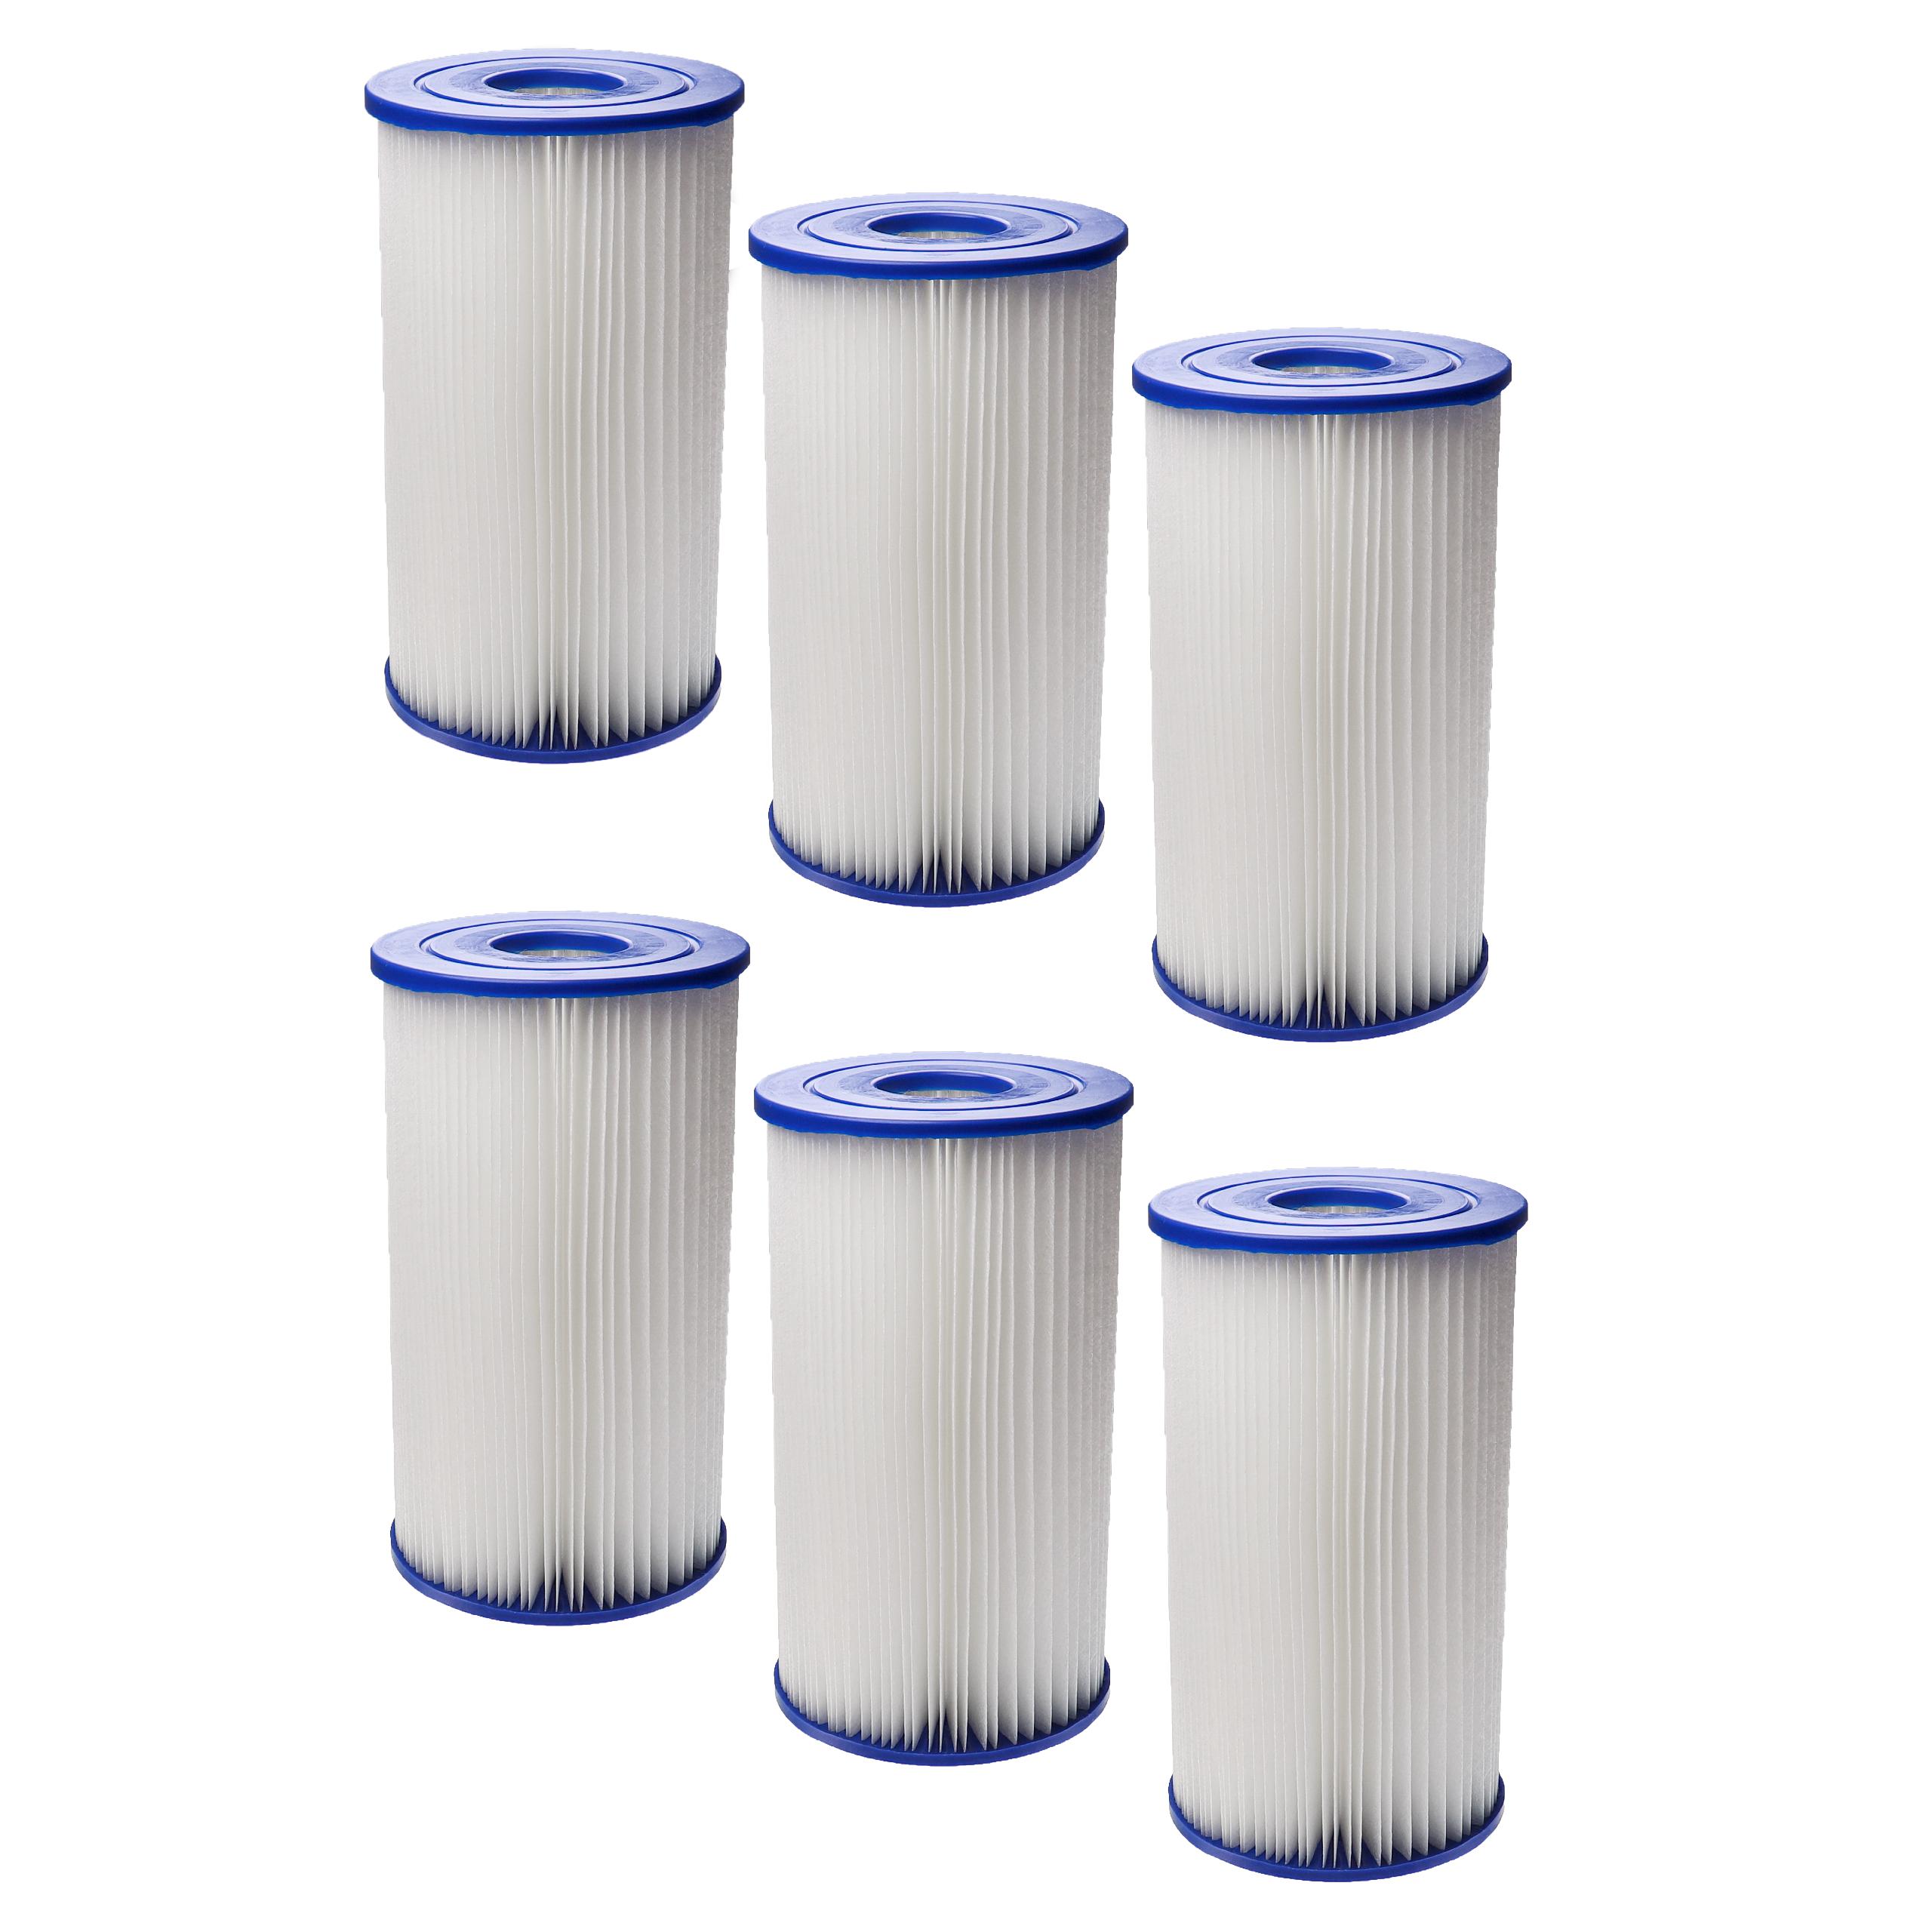 6x Filtres à eau remplace Bestway 58221, type 4 pour piscine, pompe de filtration Intex - Cartouche filtre